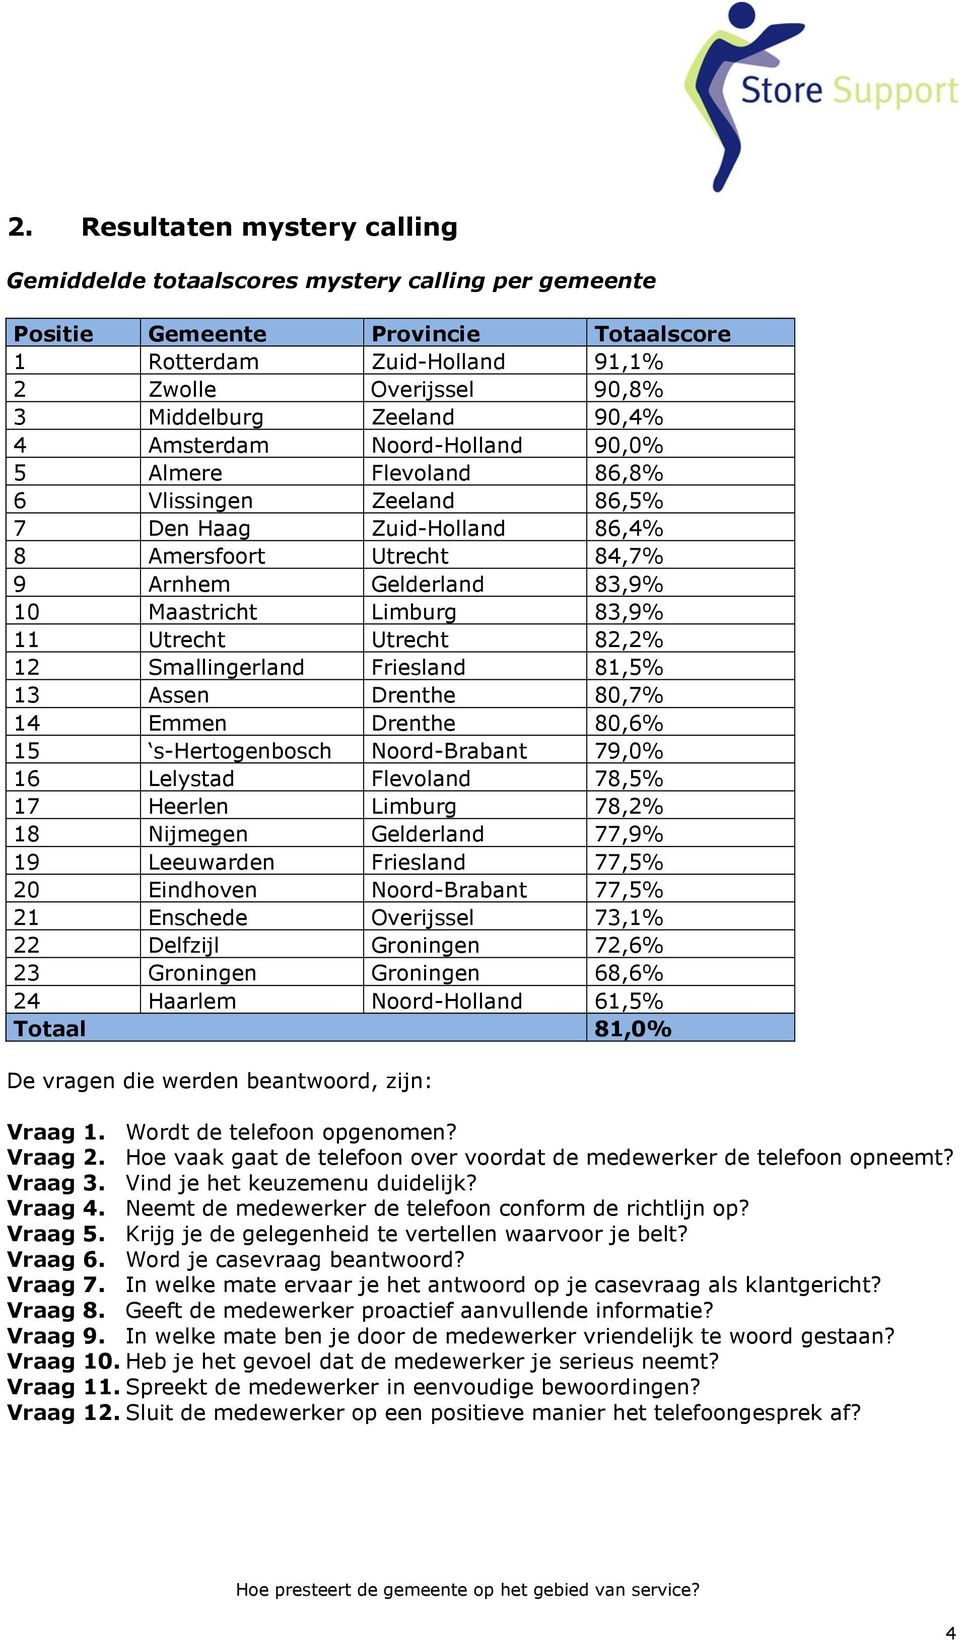 83,9% 11 Utrecht Utrecht 82,2% 12 Smallingerland Friesland 81,5% 13 Assen Drenthe 80,7% 14 Emmen Drenthe 80,6% 15 s-hertogenbosch Noord-Brabant 79,0% 16 Lelystad Flevoland 78,5% 17 Heerlen Limburg